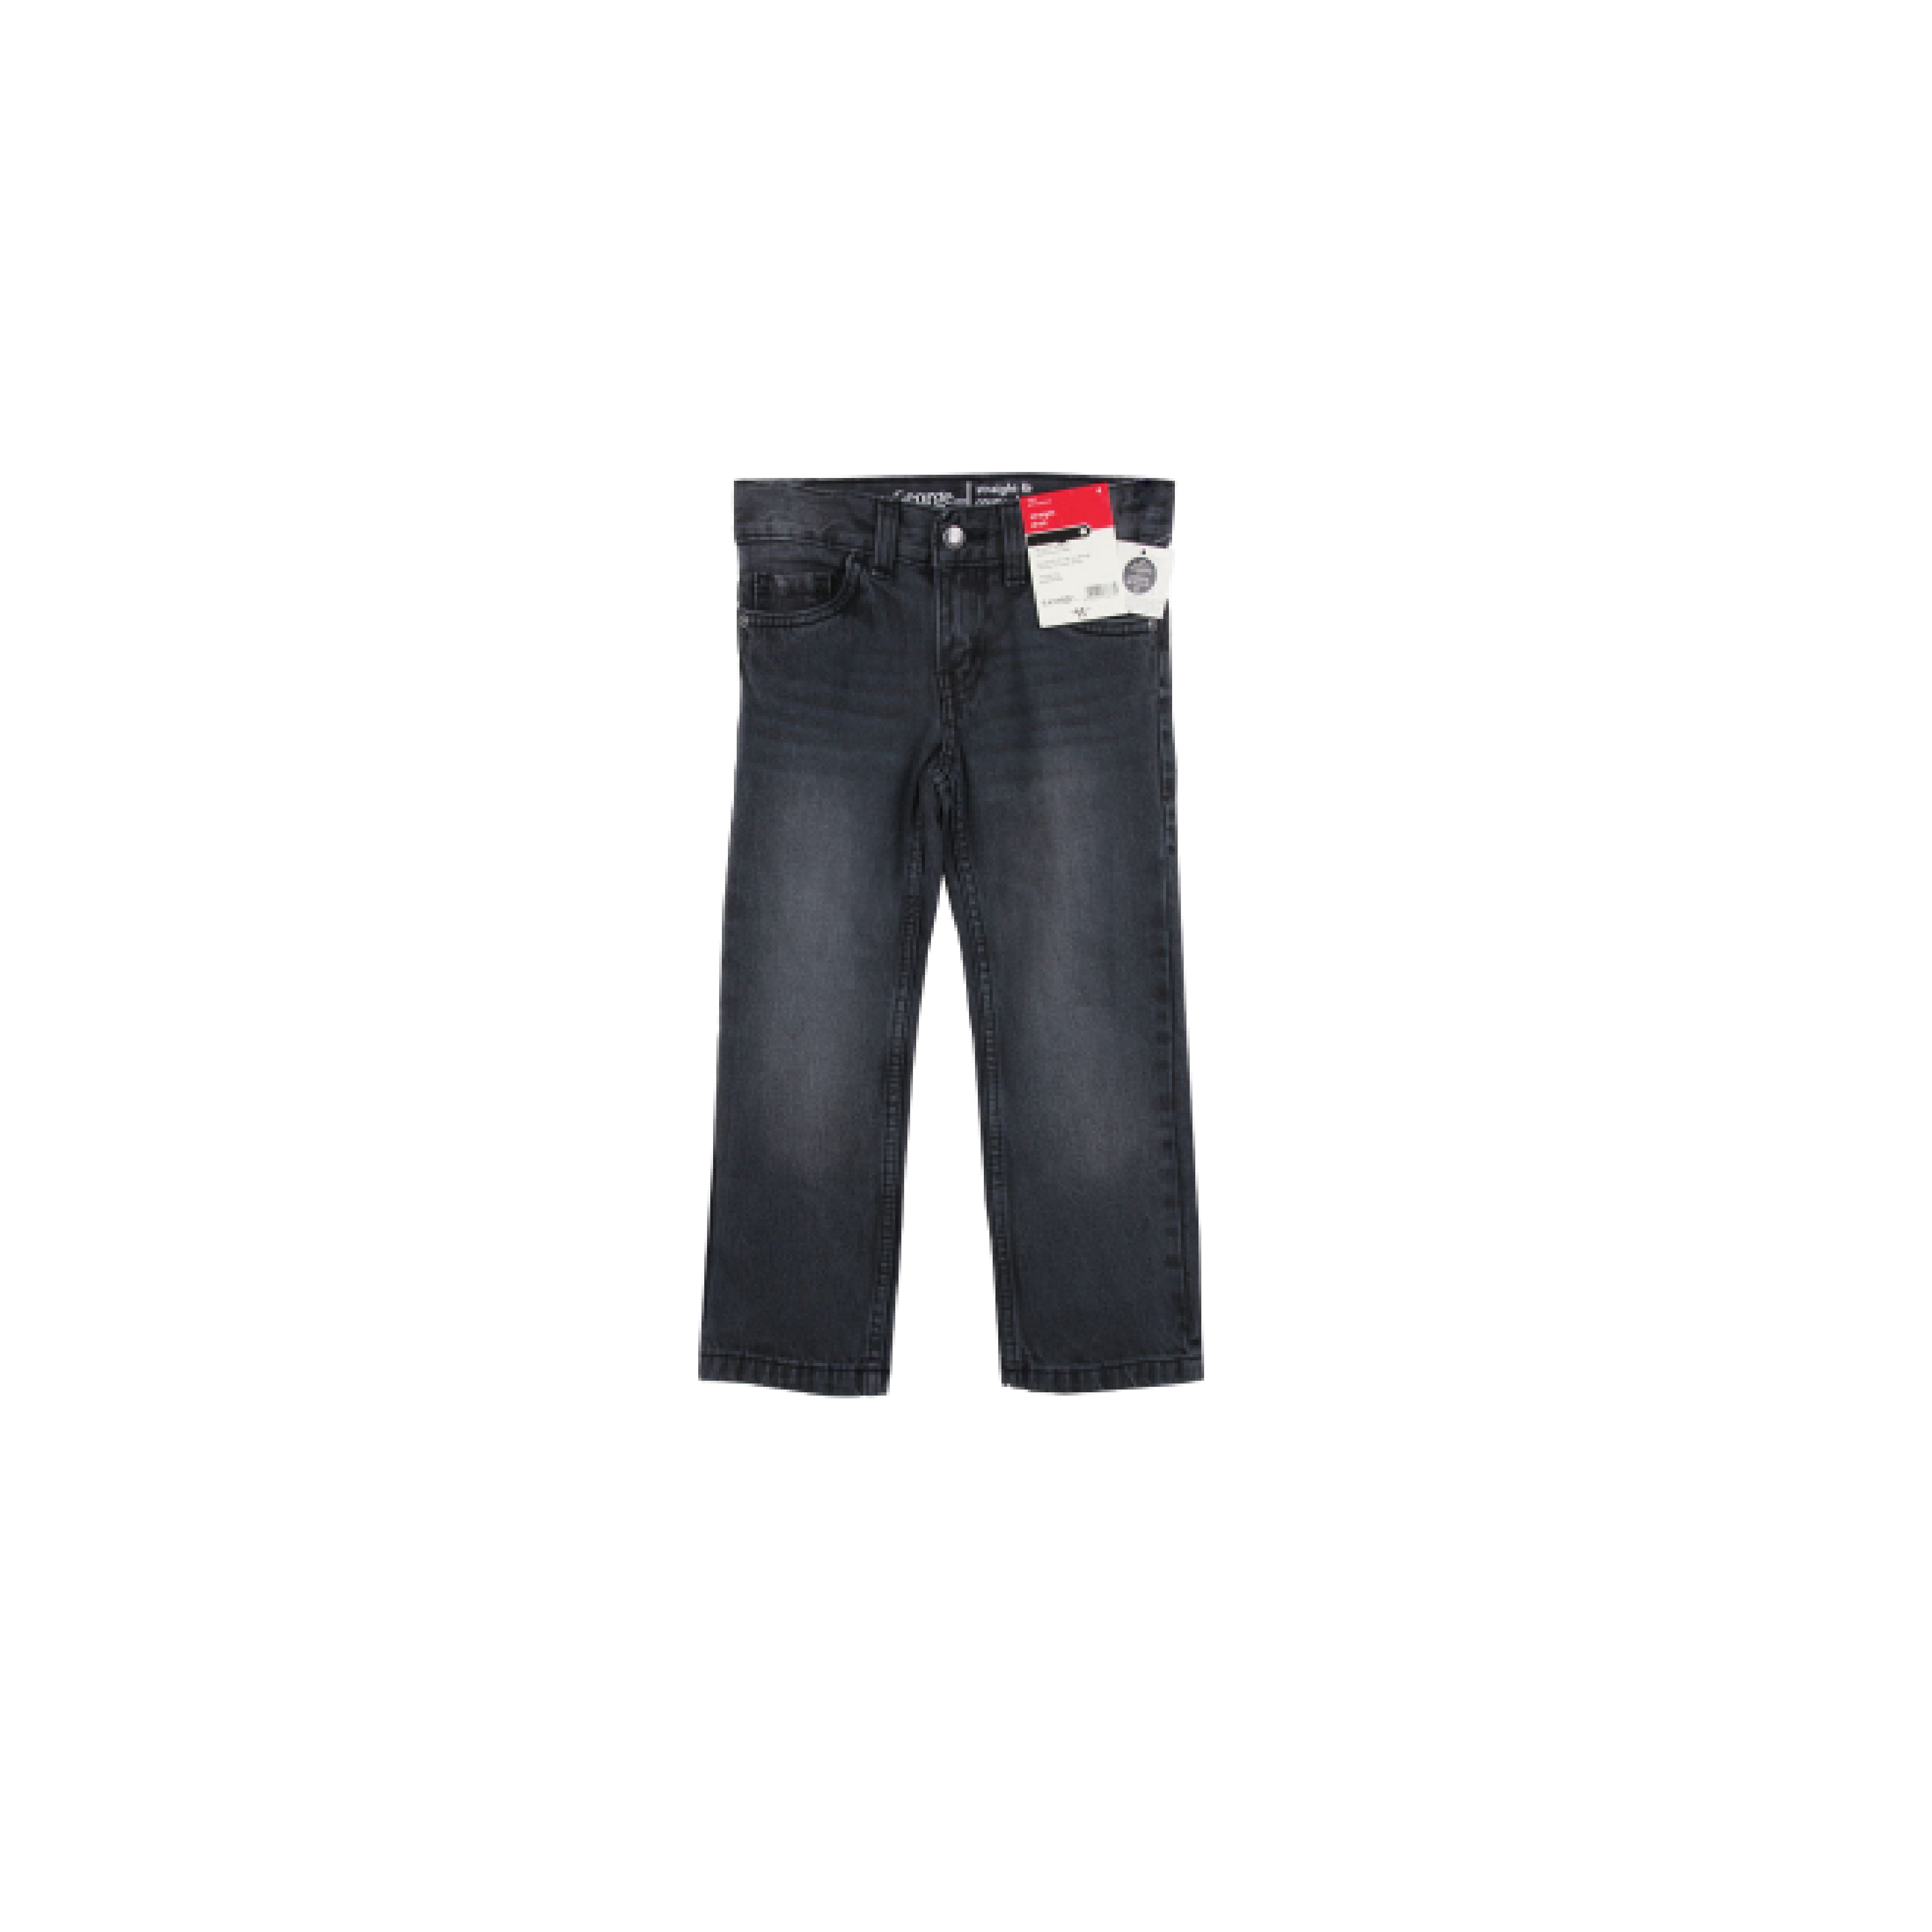 Celan Anak Laki-laki - Boys Long Pant Cotton Branded (ST-GG L01)